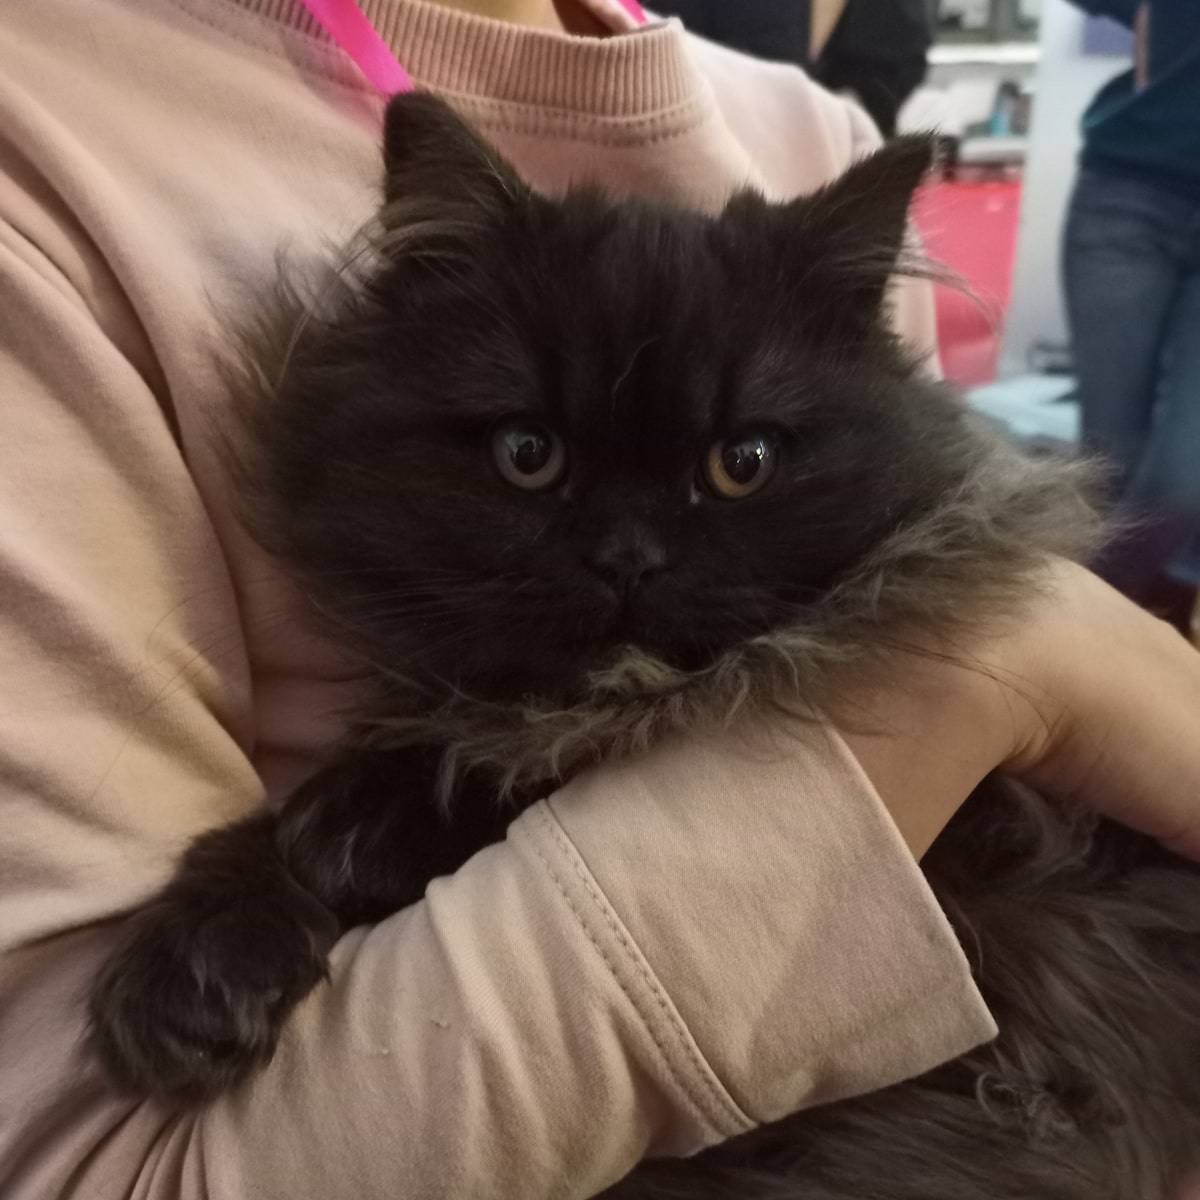 cute fluffy kitten in arms